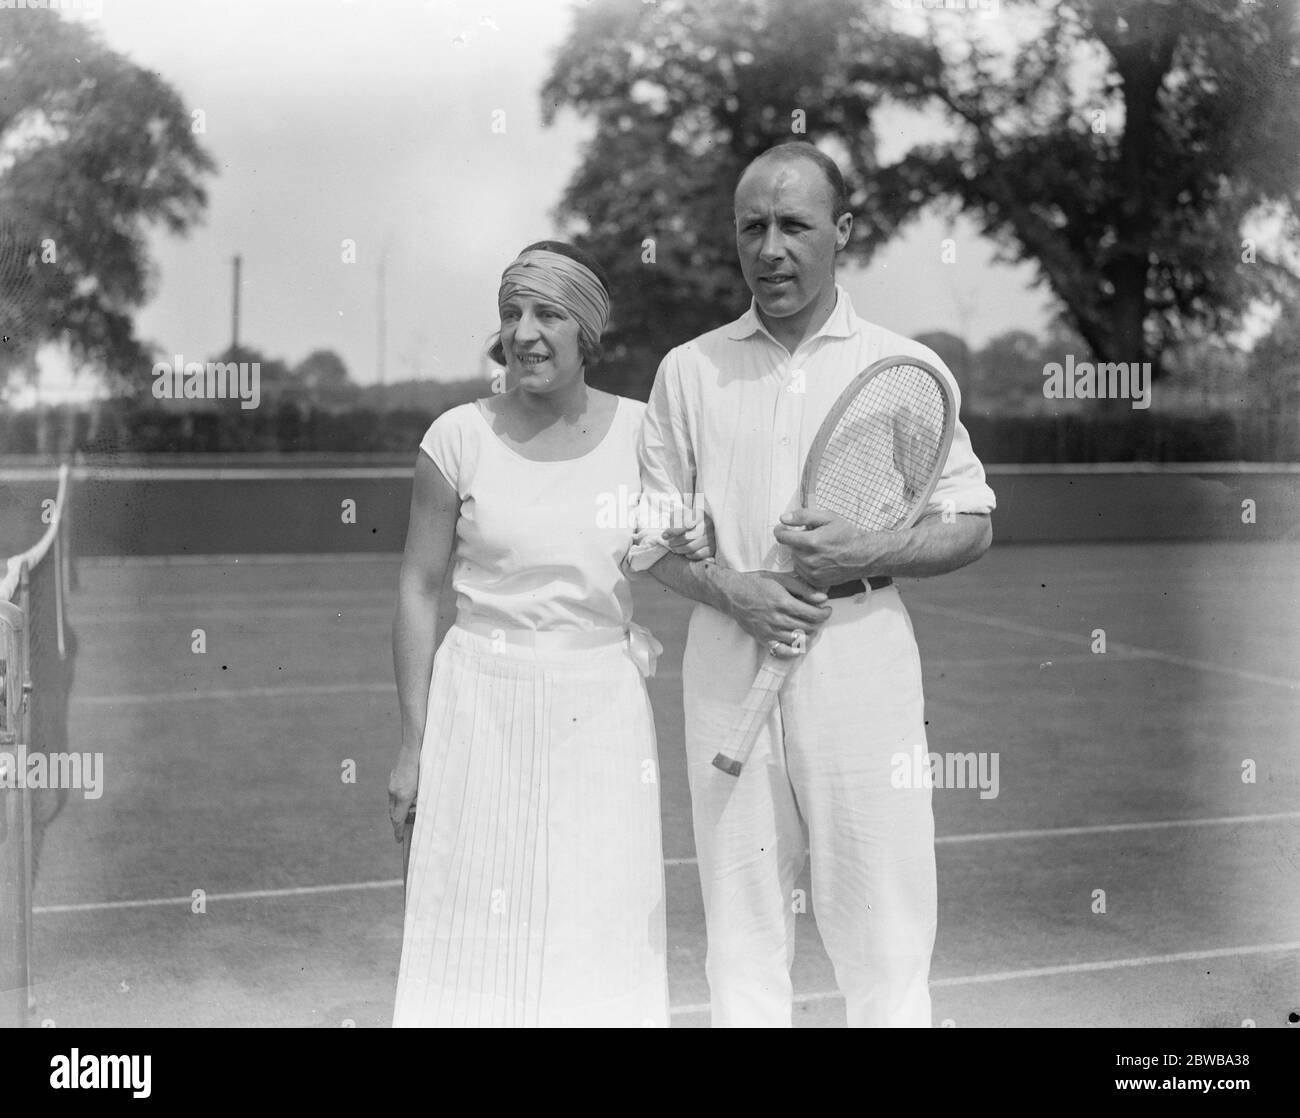 Lenglen und ihr Partner in Wimbledon. Mlle Suzanne Lenglen und J Washer, die Partner in der gemischten Weltmeisterschaft Tennis Turnier in Wimbledon sind. 24 Juni 1923 Stockfoto